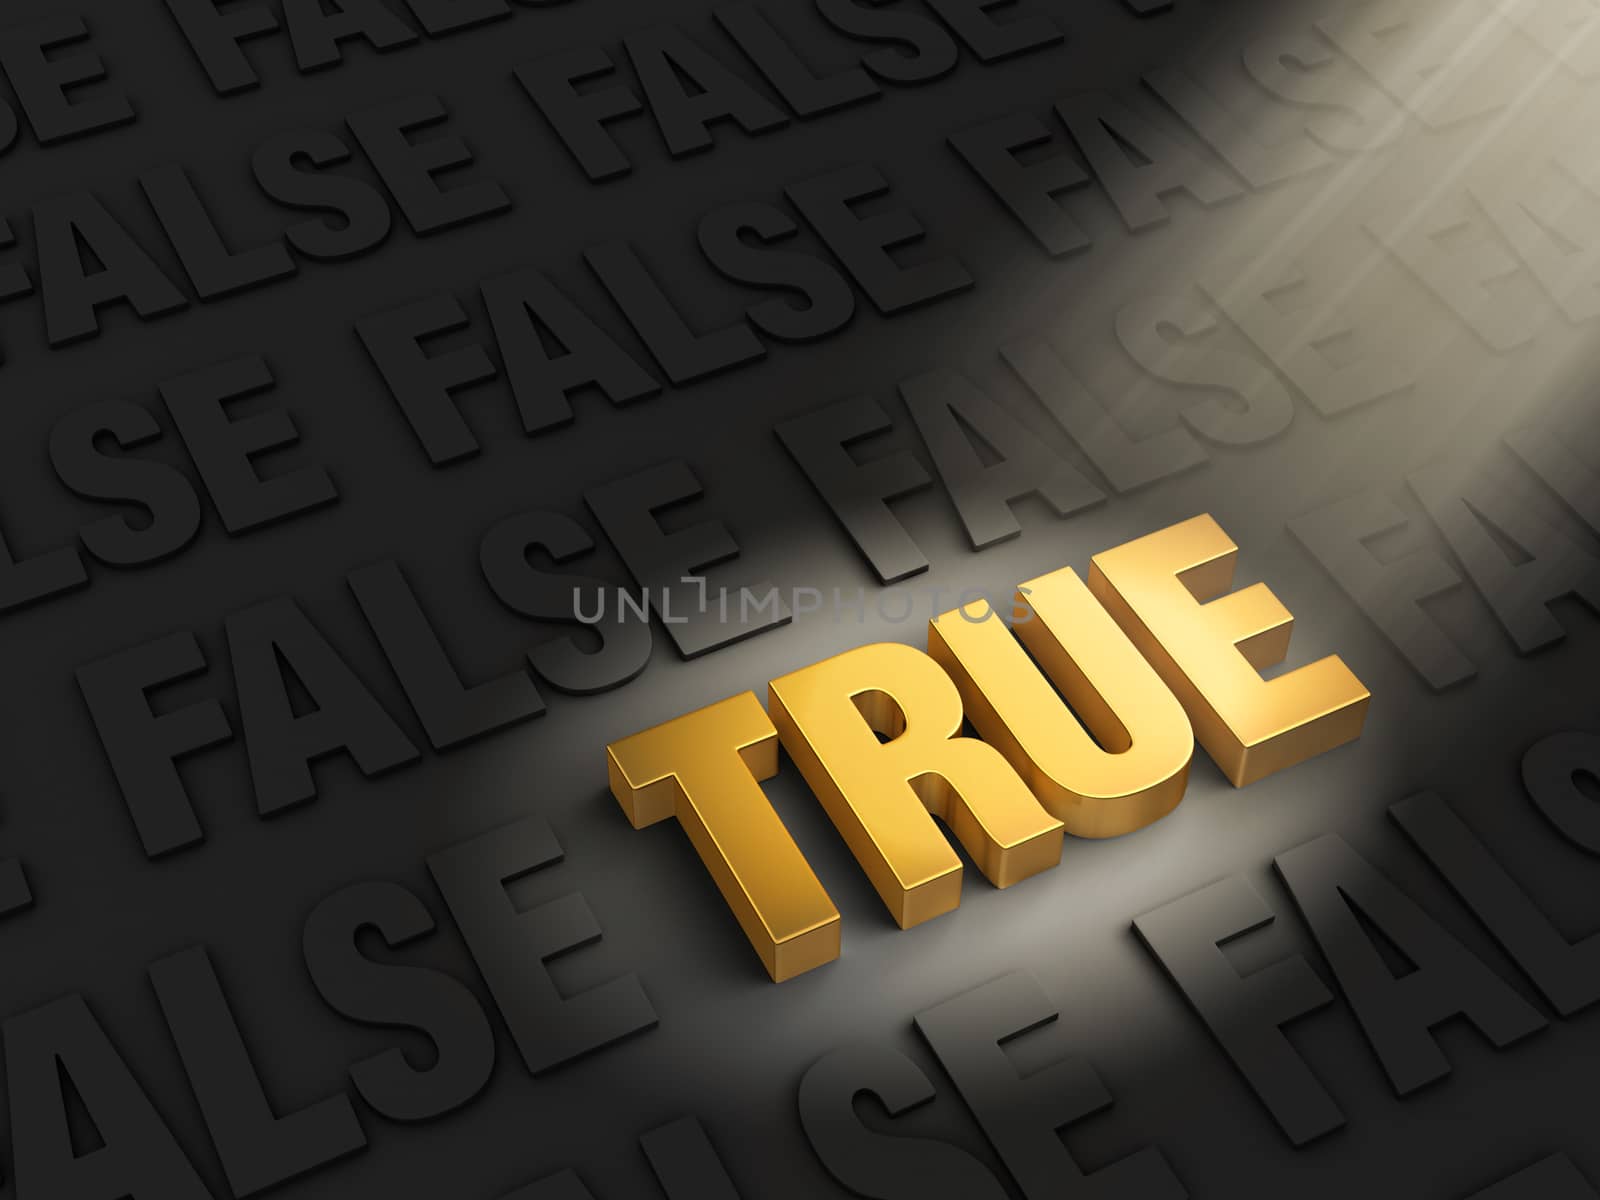 A bright spotlight illuminates a golden "TRUE" on a dark background of gray "FALSE"s